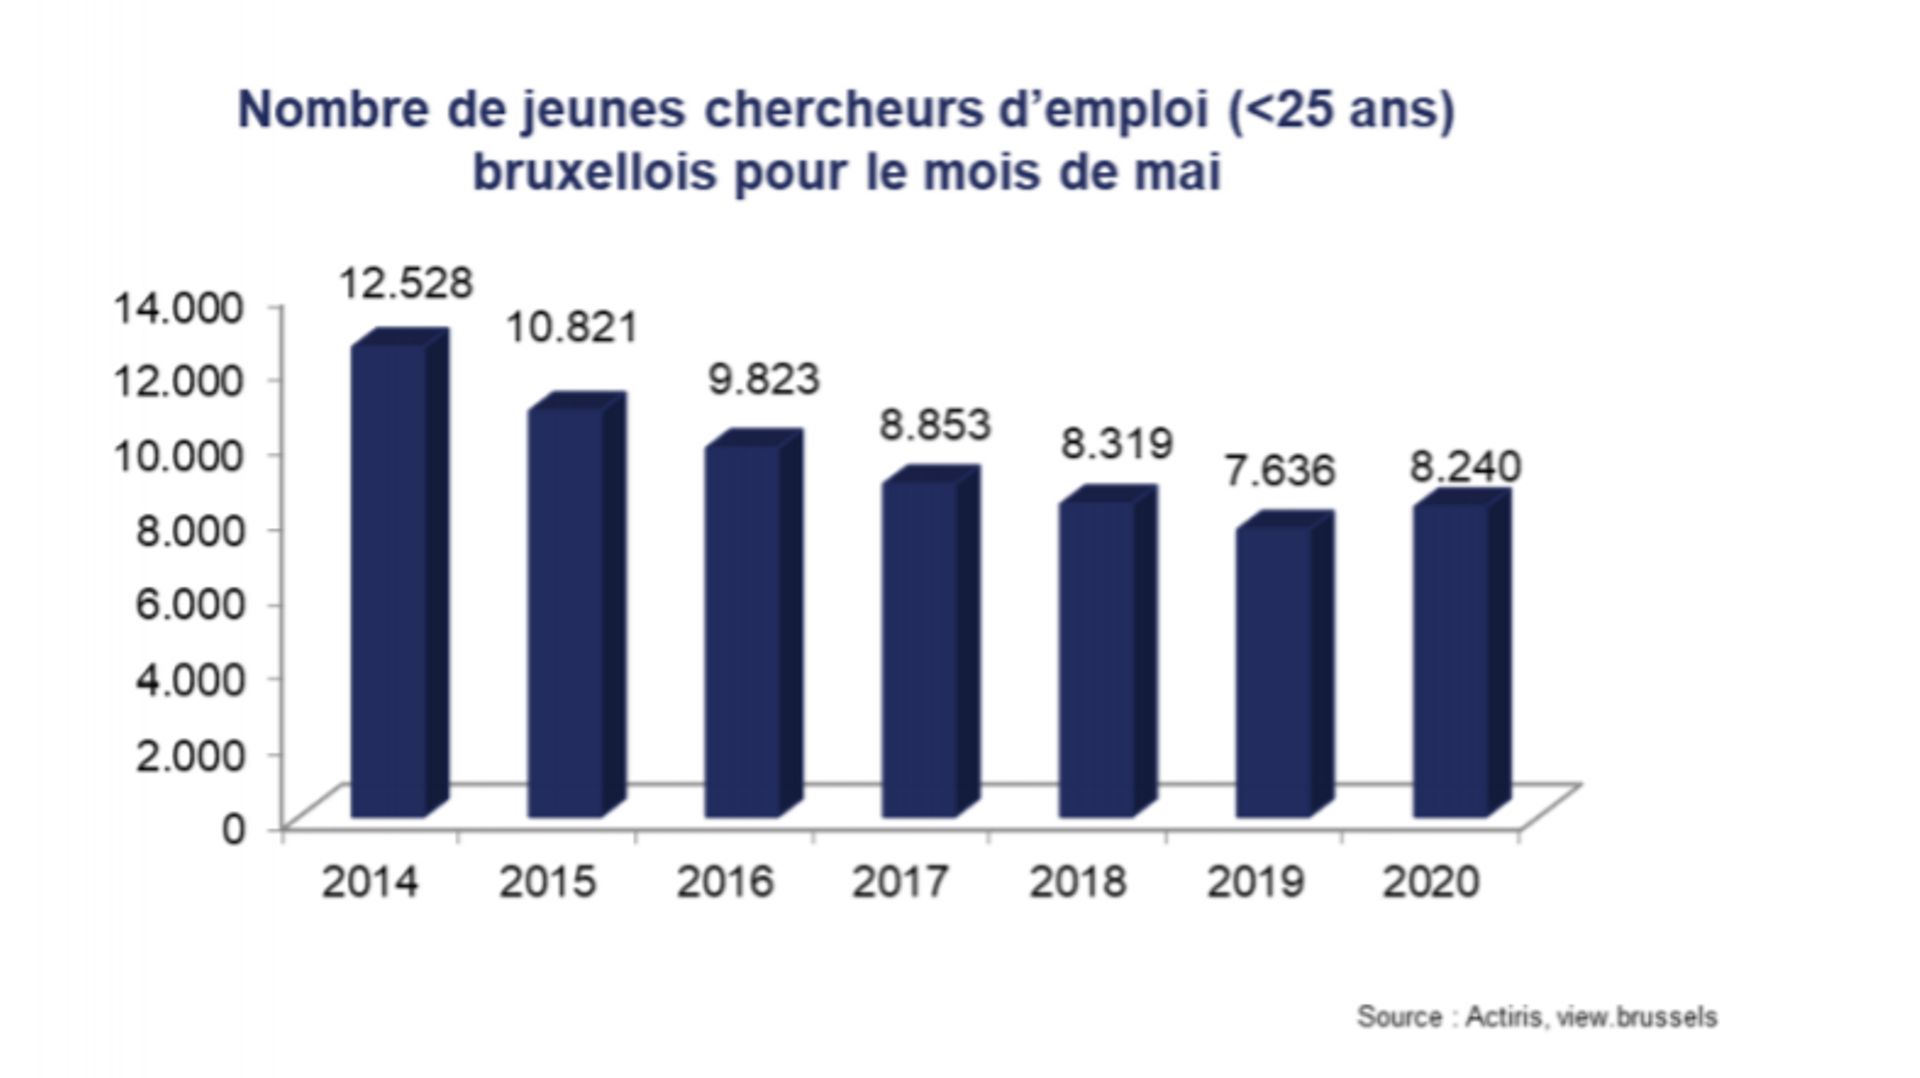 Chômage à Bruxelles : impact limité du covid-19 sur le chômage global mais hausse chez les jeunes selon Actiris